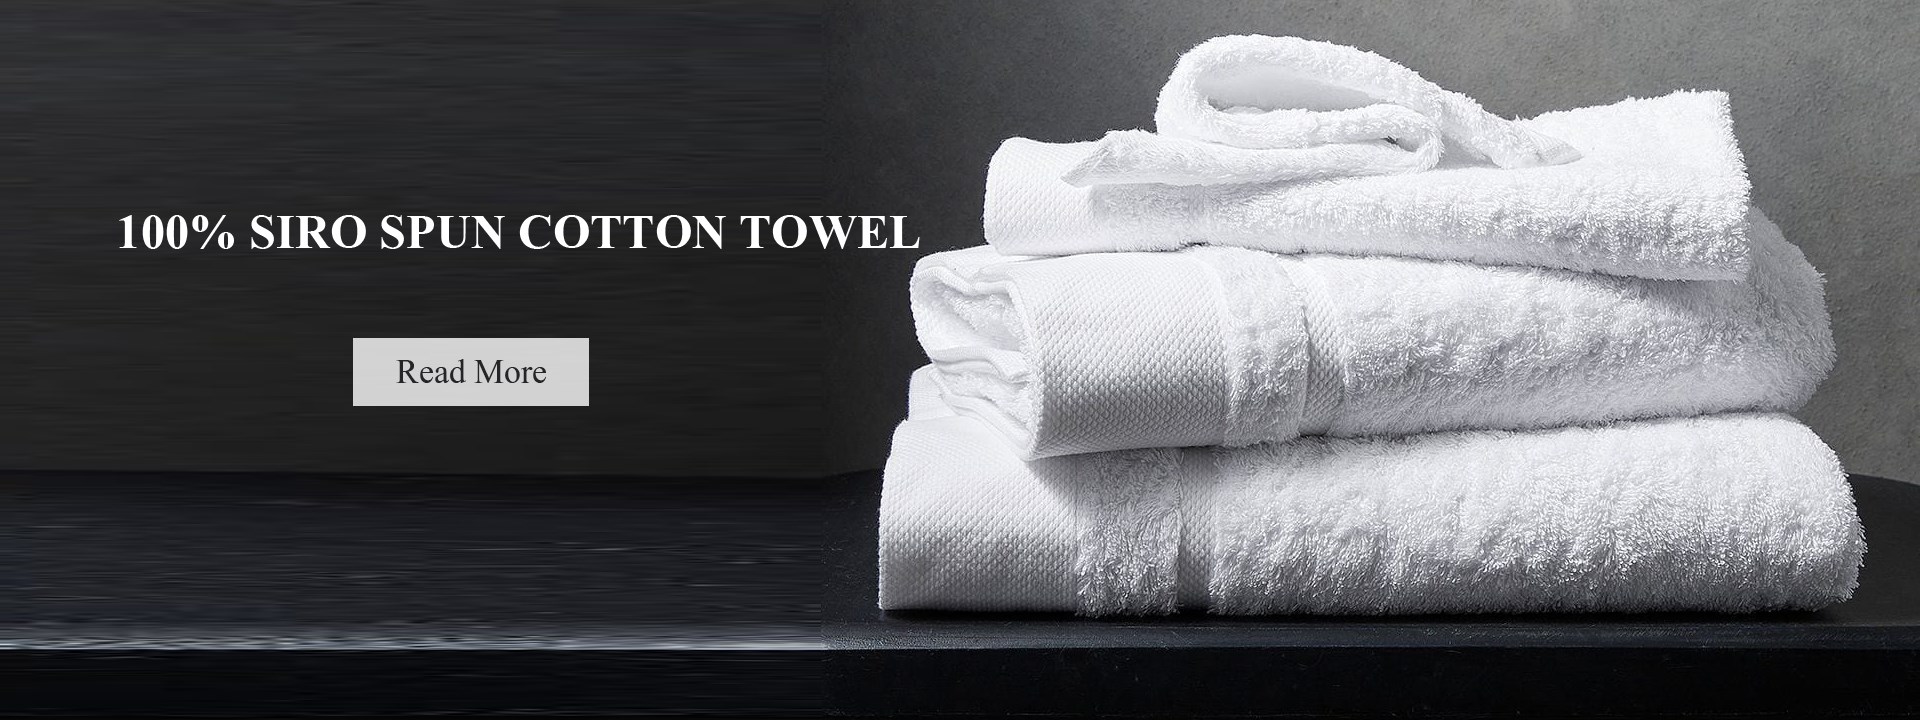 100% Cotton Luxury Hilton Towels Wholesale